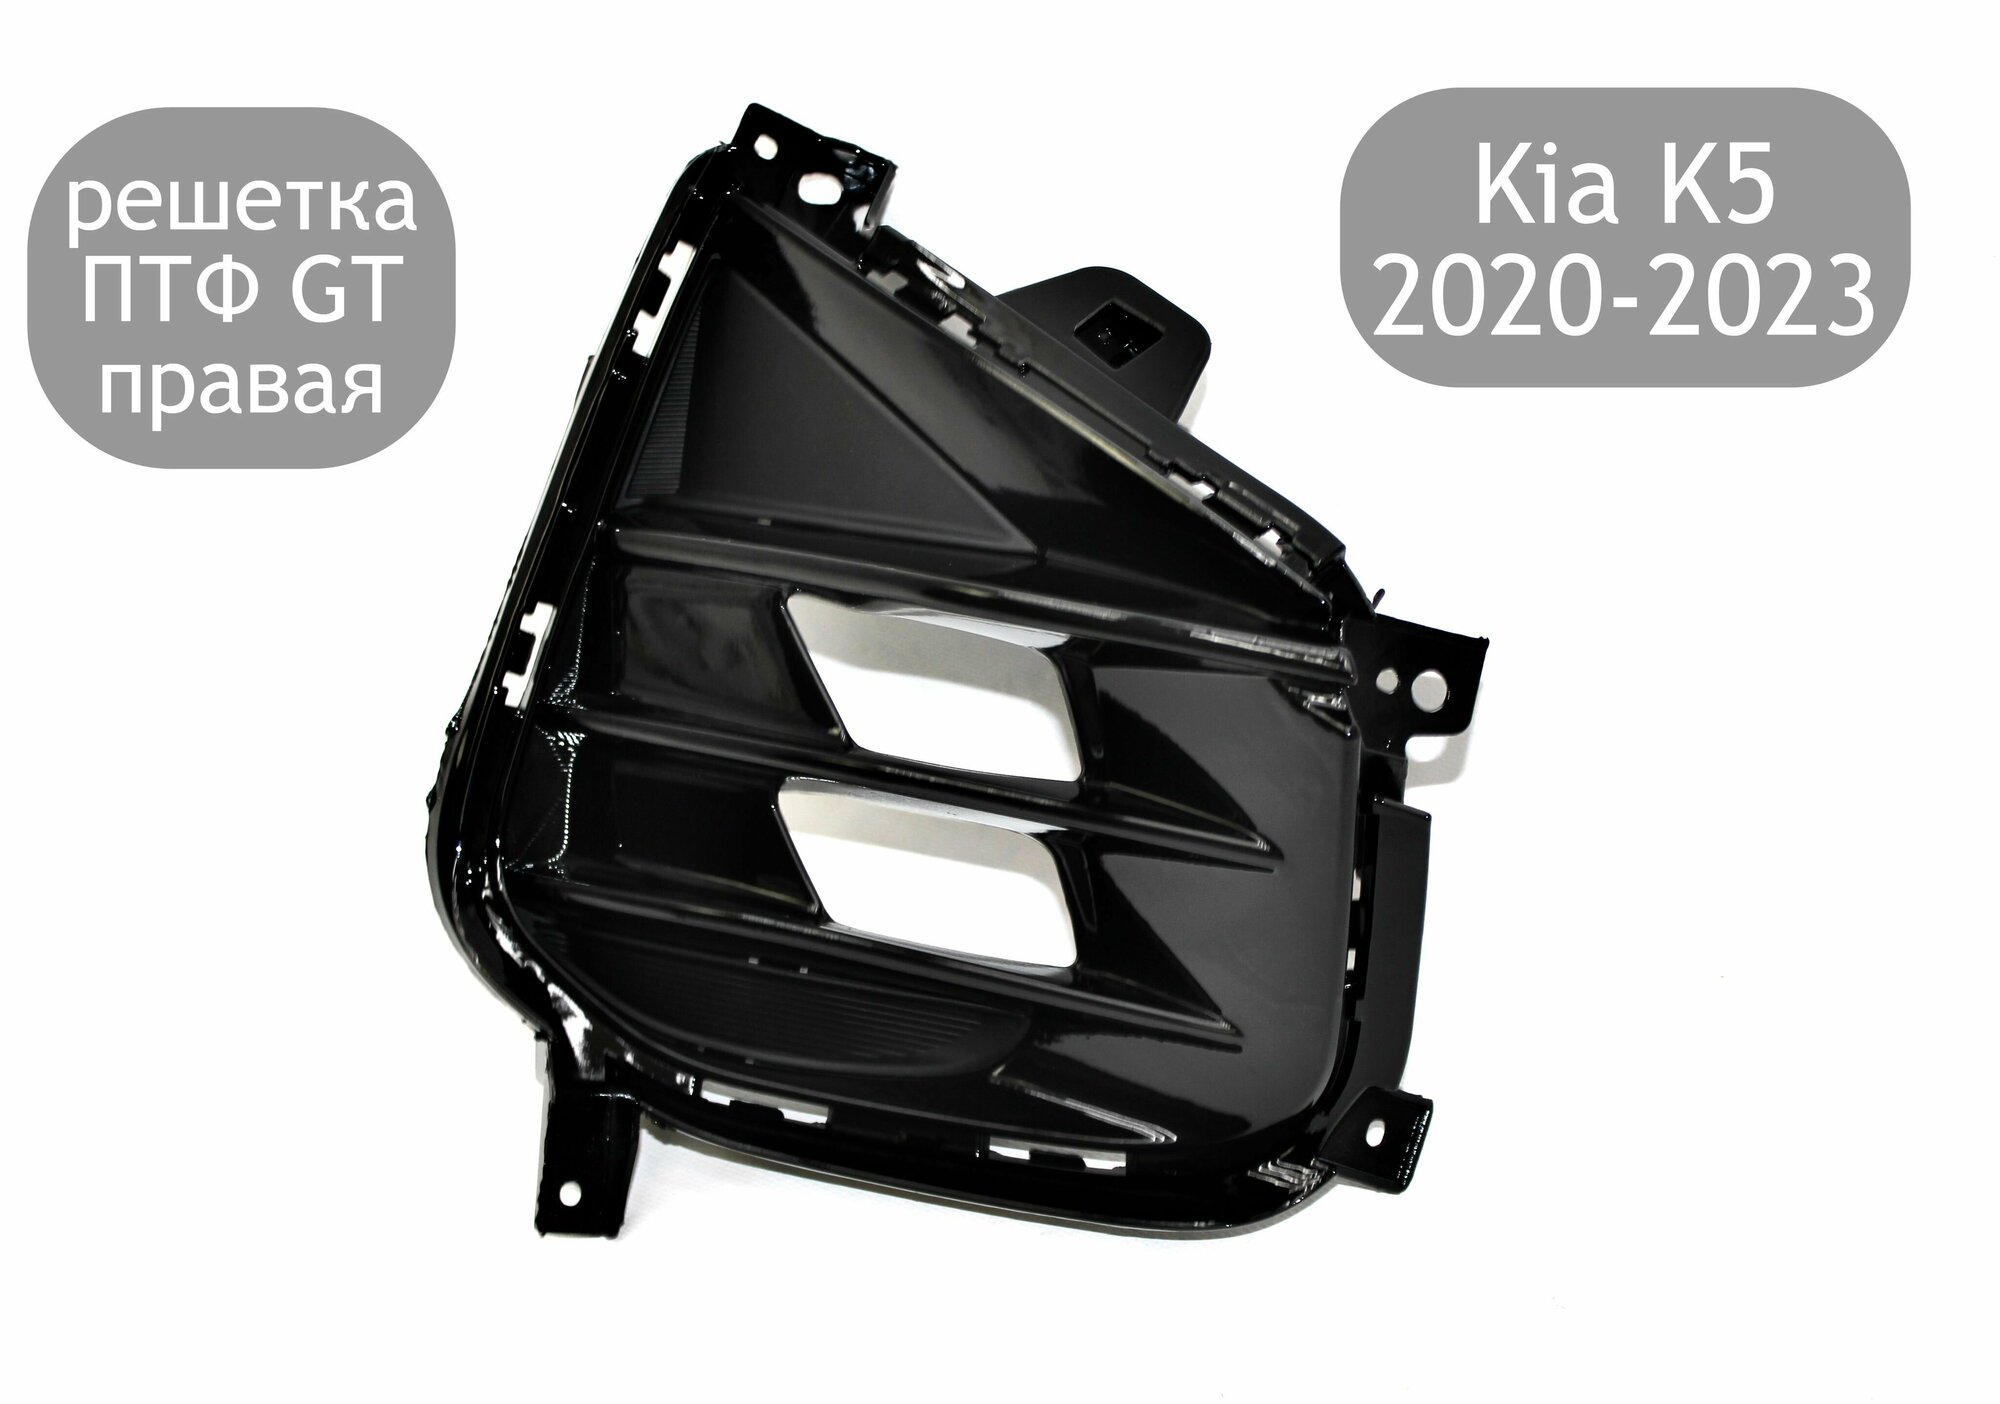 Решетка ПТФ GT правая для Kia K5 2020-2023 накладка на диодную ПТФ Киа К5